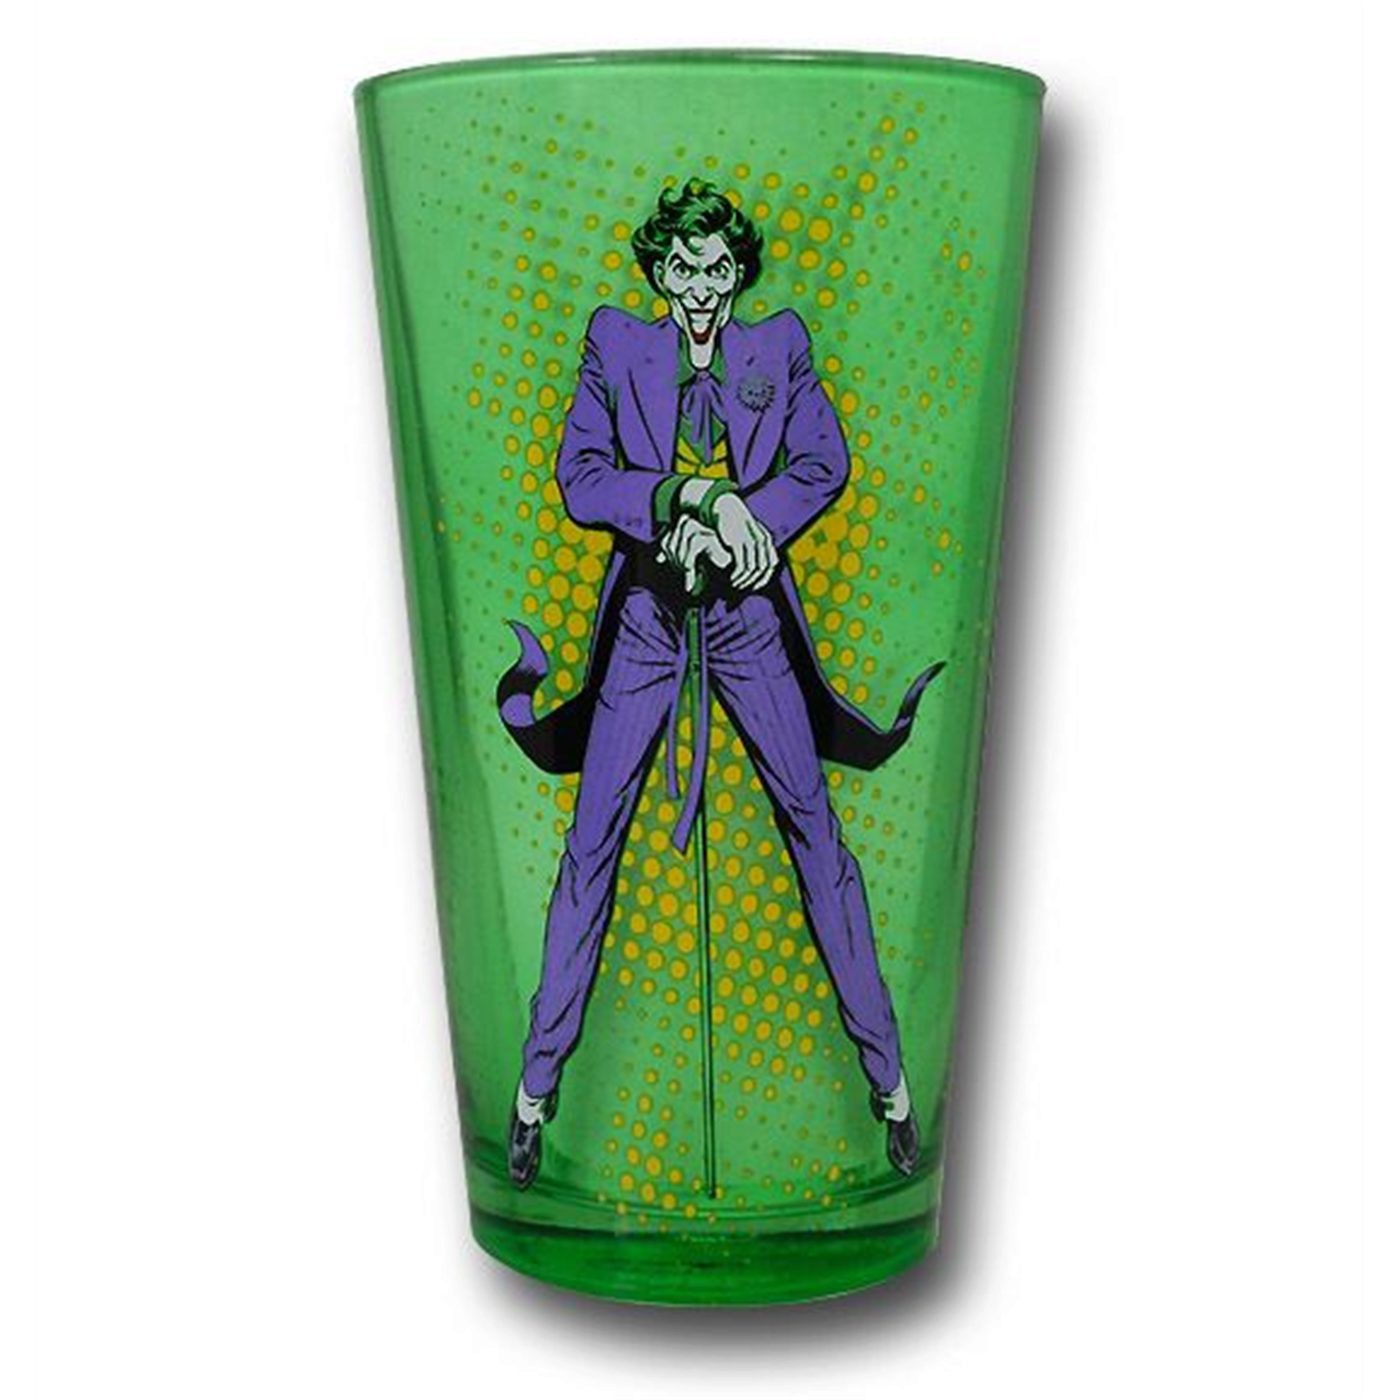 Joker Green Glass Pint